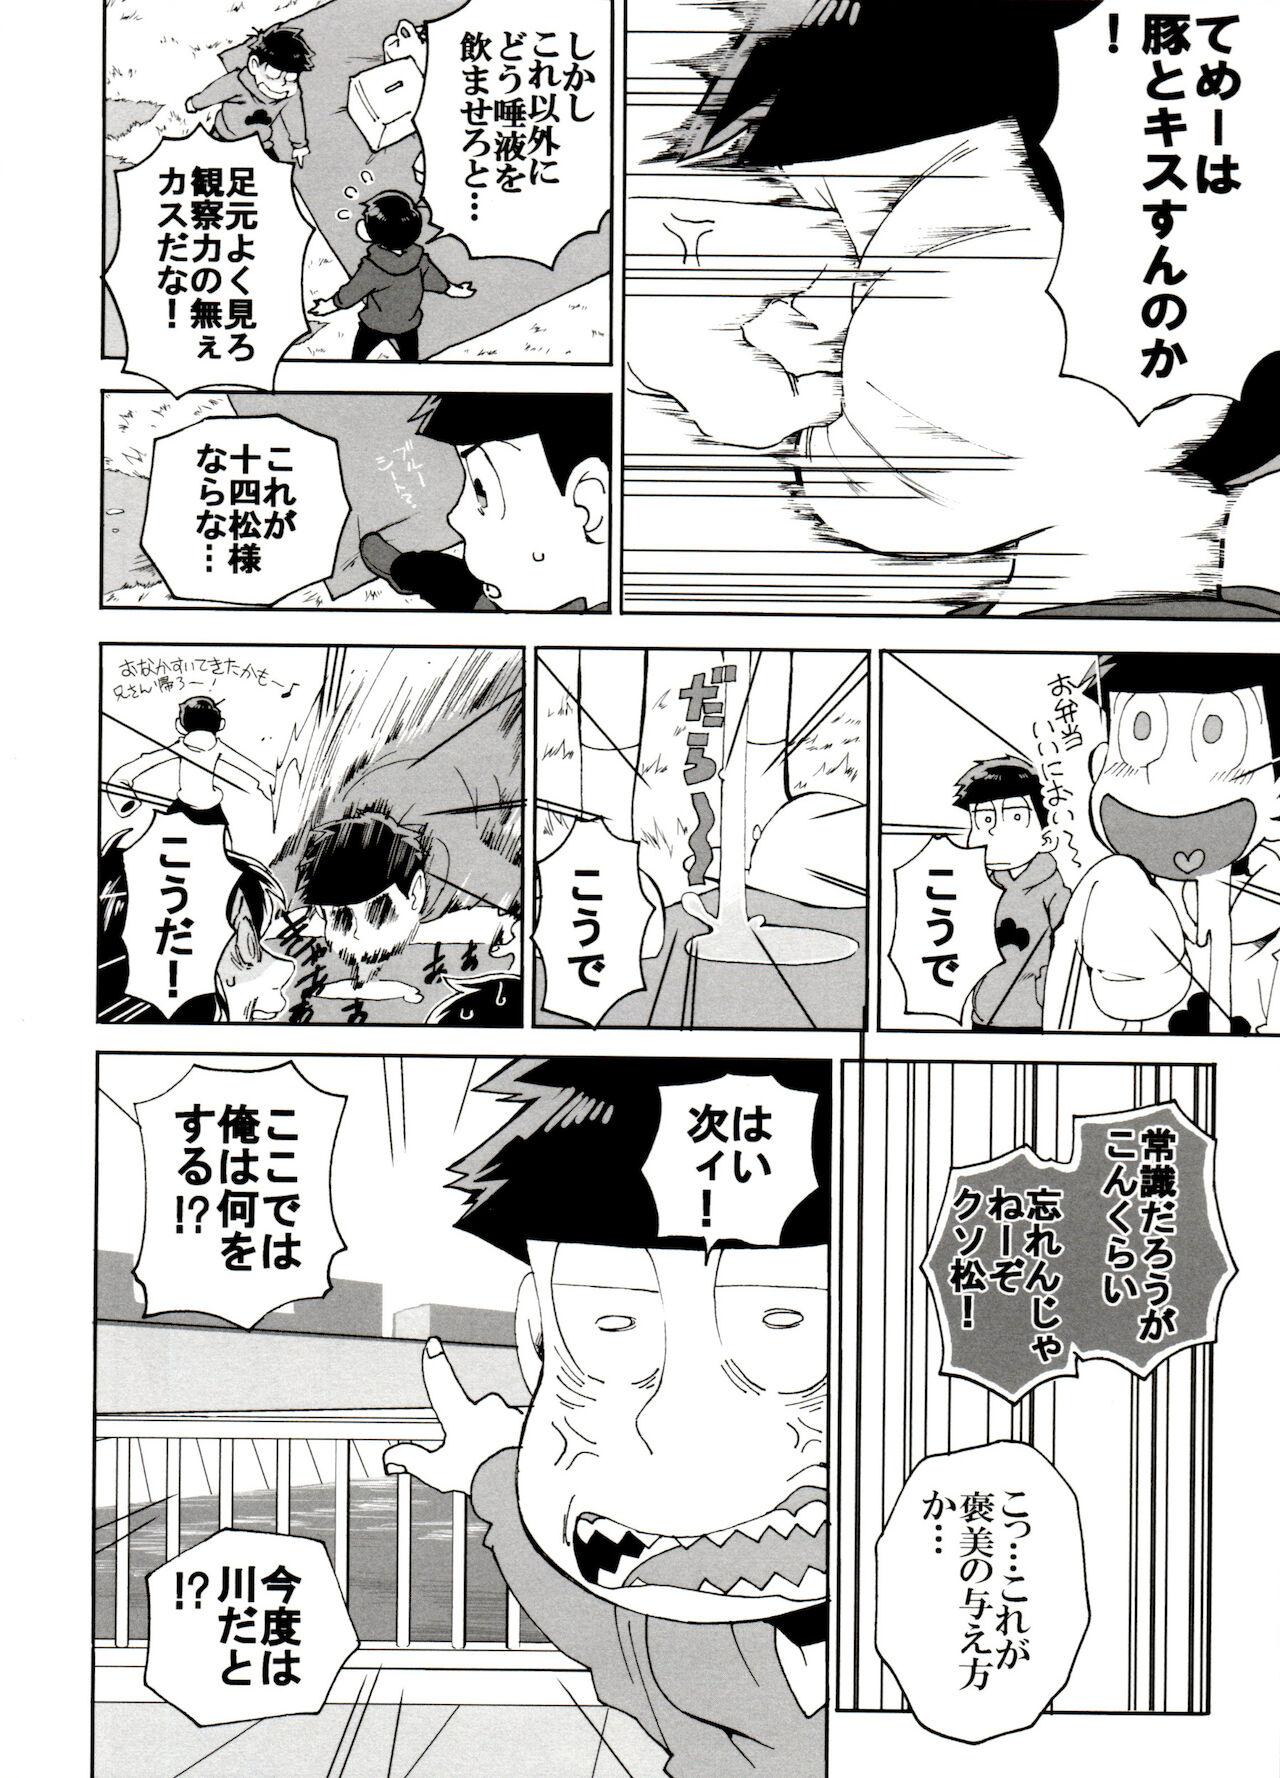 Couple Fucking SM Matsu 2 - Osomatsu san Leaked - Page 10